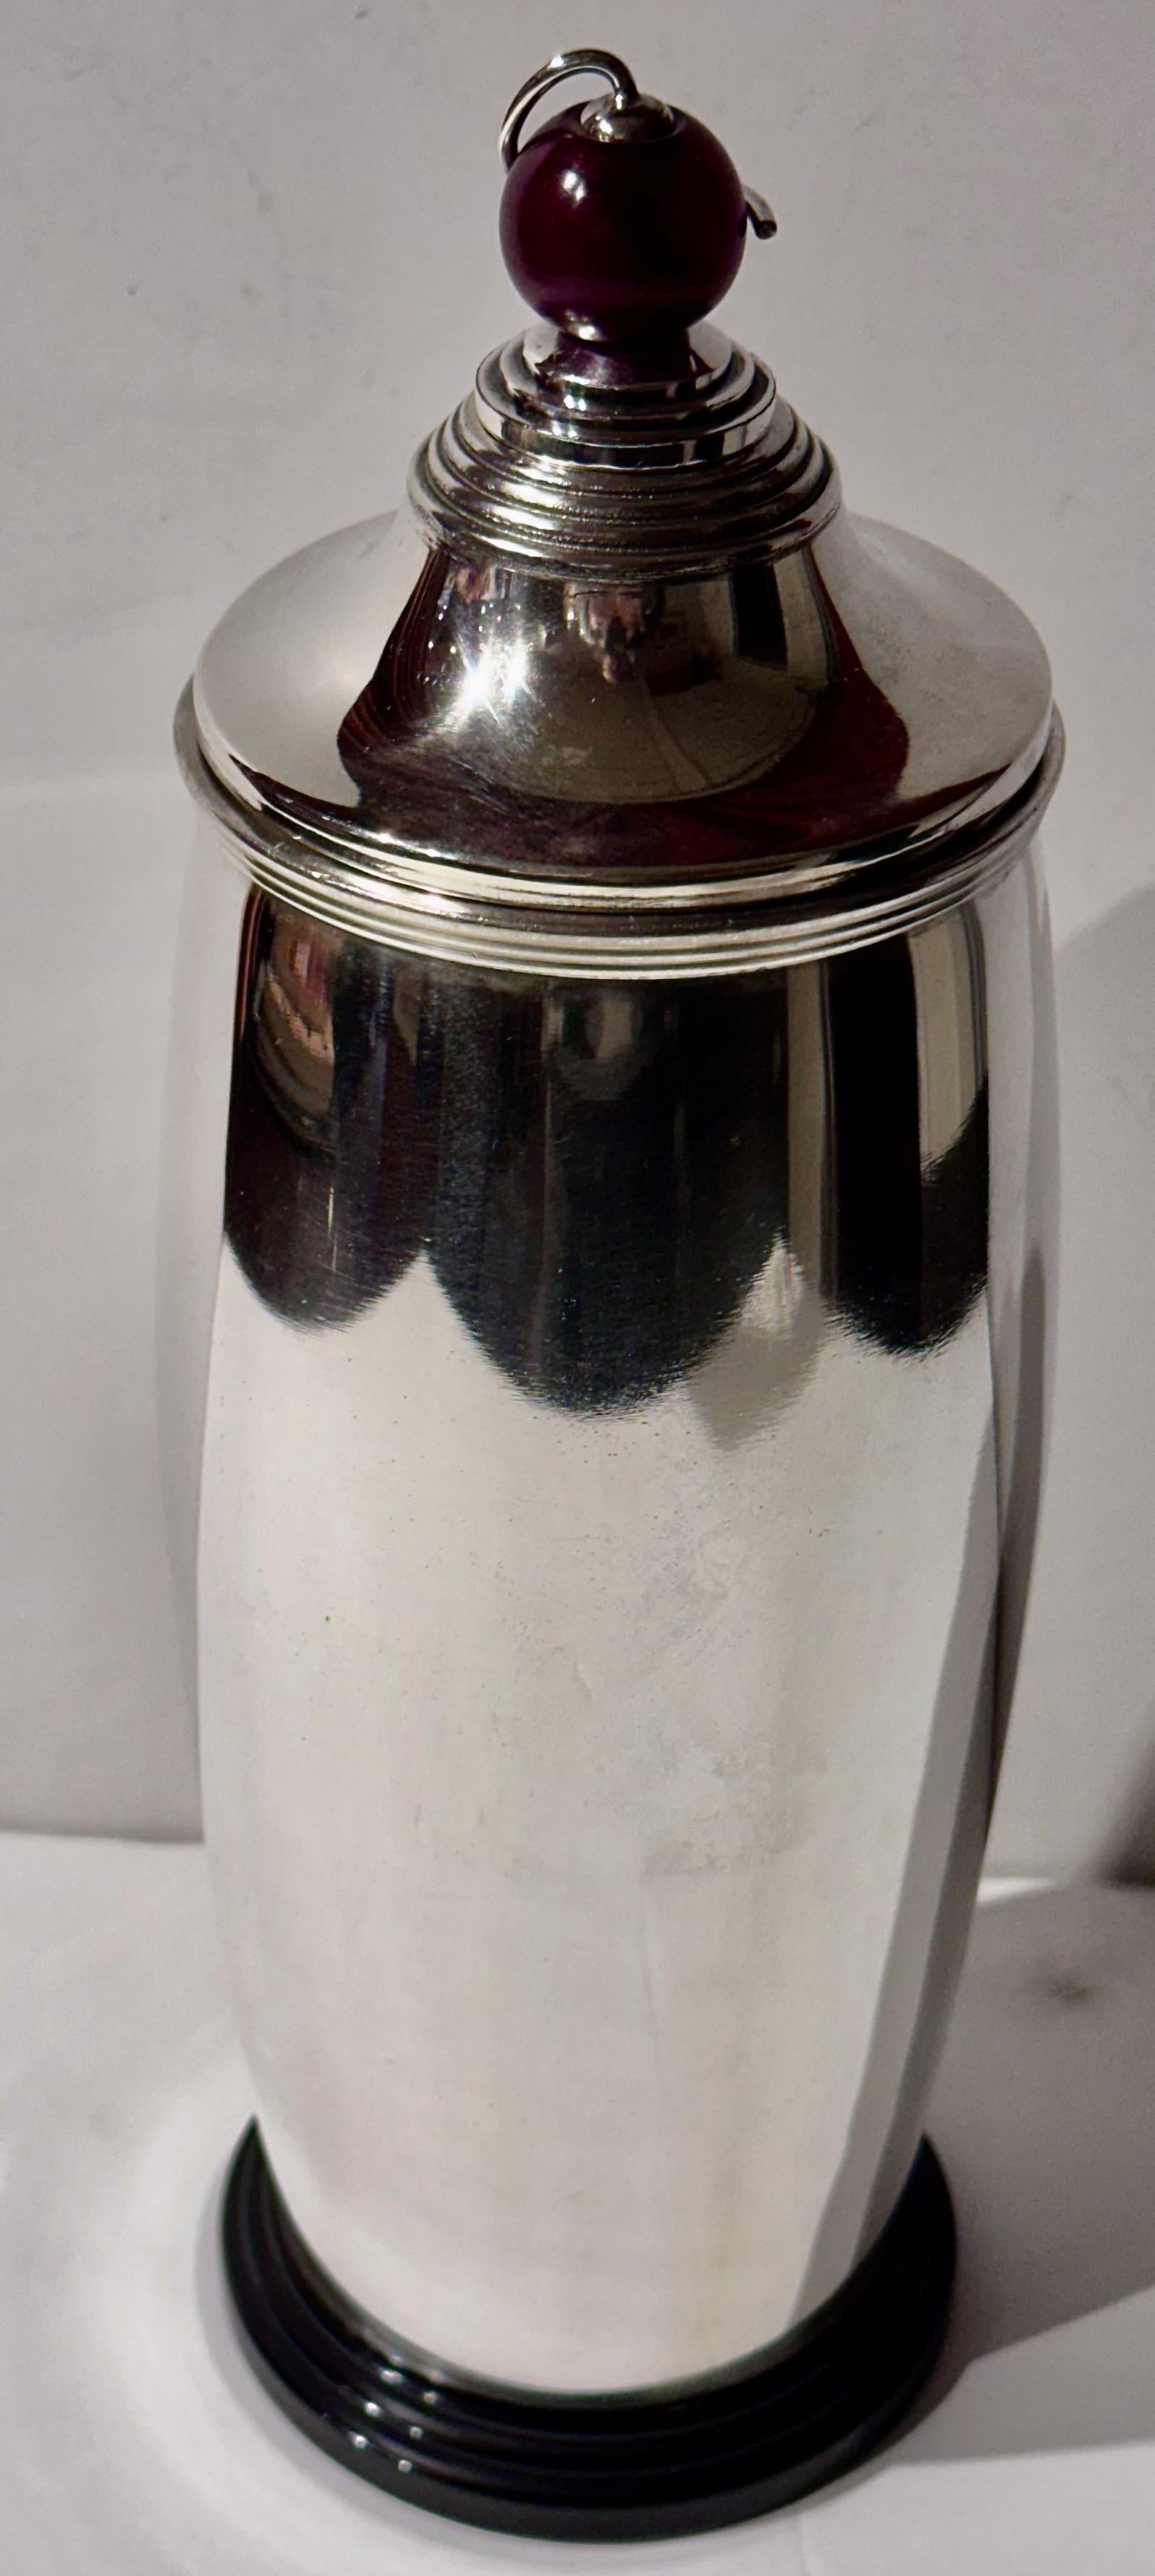 Ce Shakers en argent Meriden International de 1927 avec un couvercle en forme de boule d'ambre est un exemple stupéfiant d'art fonctionnel de la période Art déco. La caractéristique principale du Shakers est son sommet inhabituel, qui ajoute un